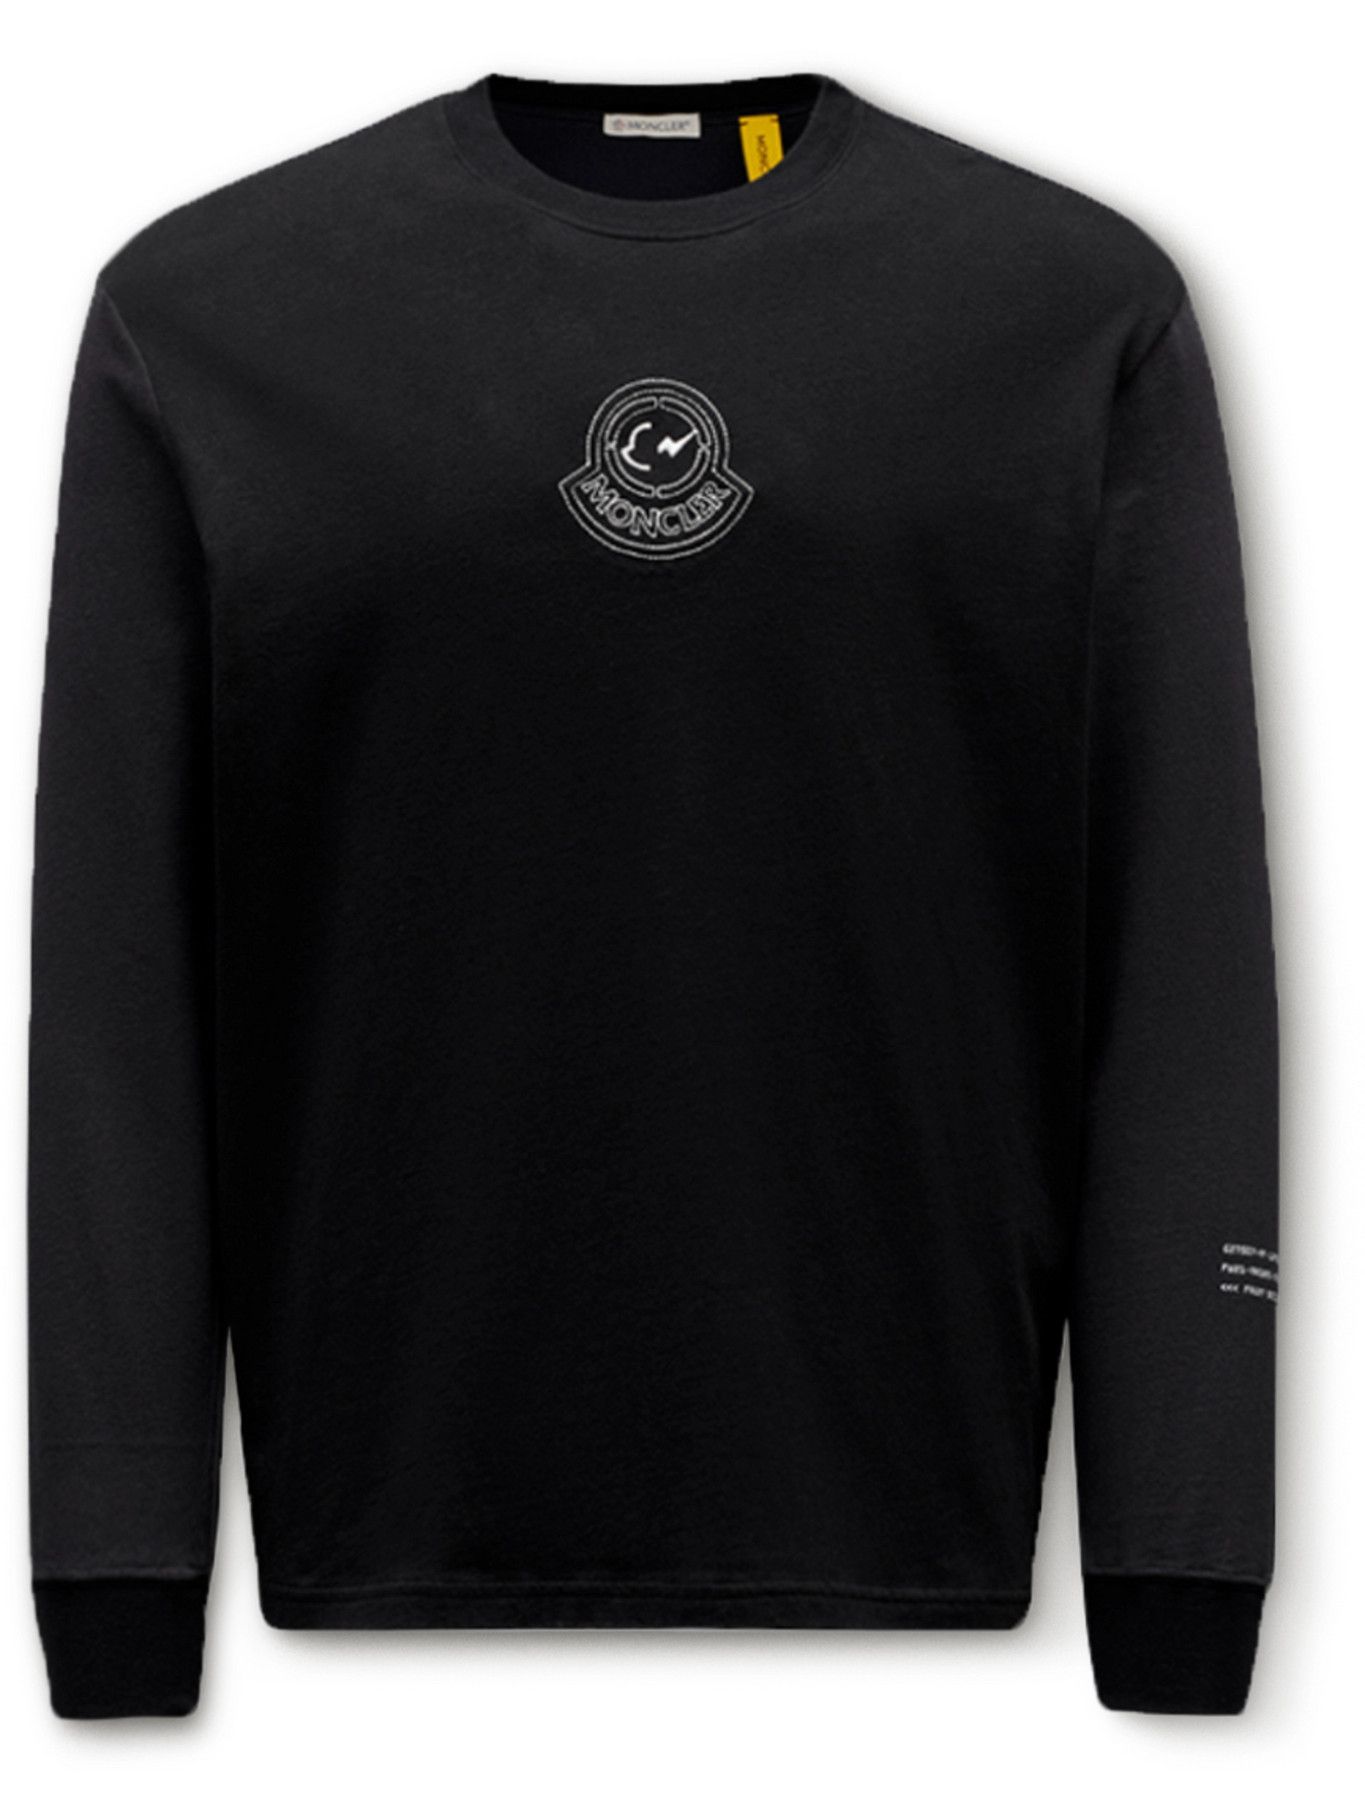 Moncler Genius Fragment 7 Printed Cotton Jersey T Shirt Black Moncler Genius 5091